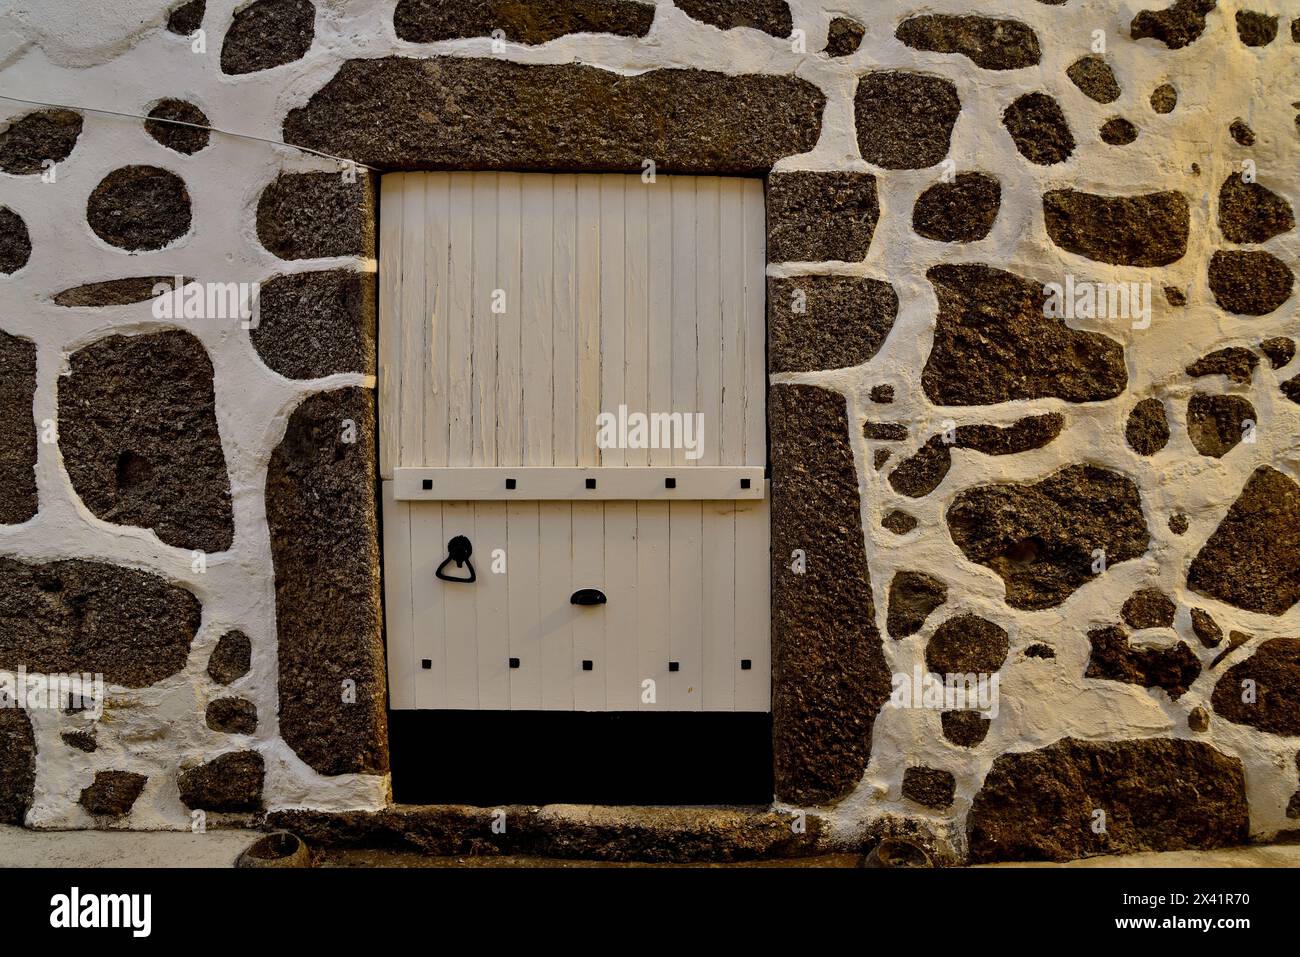 Porta e muro di sgrafitto a Taboada, Lugo, Spagna Foto Stock